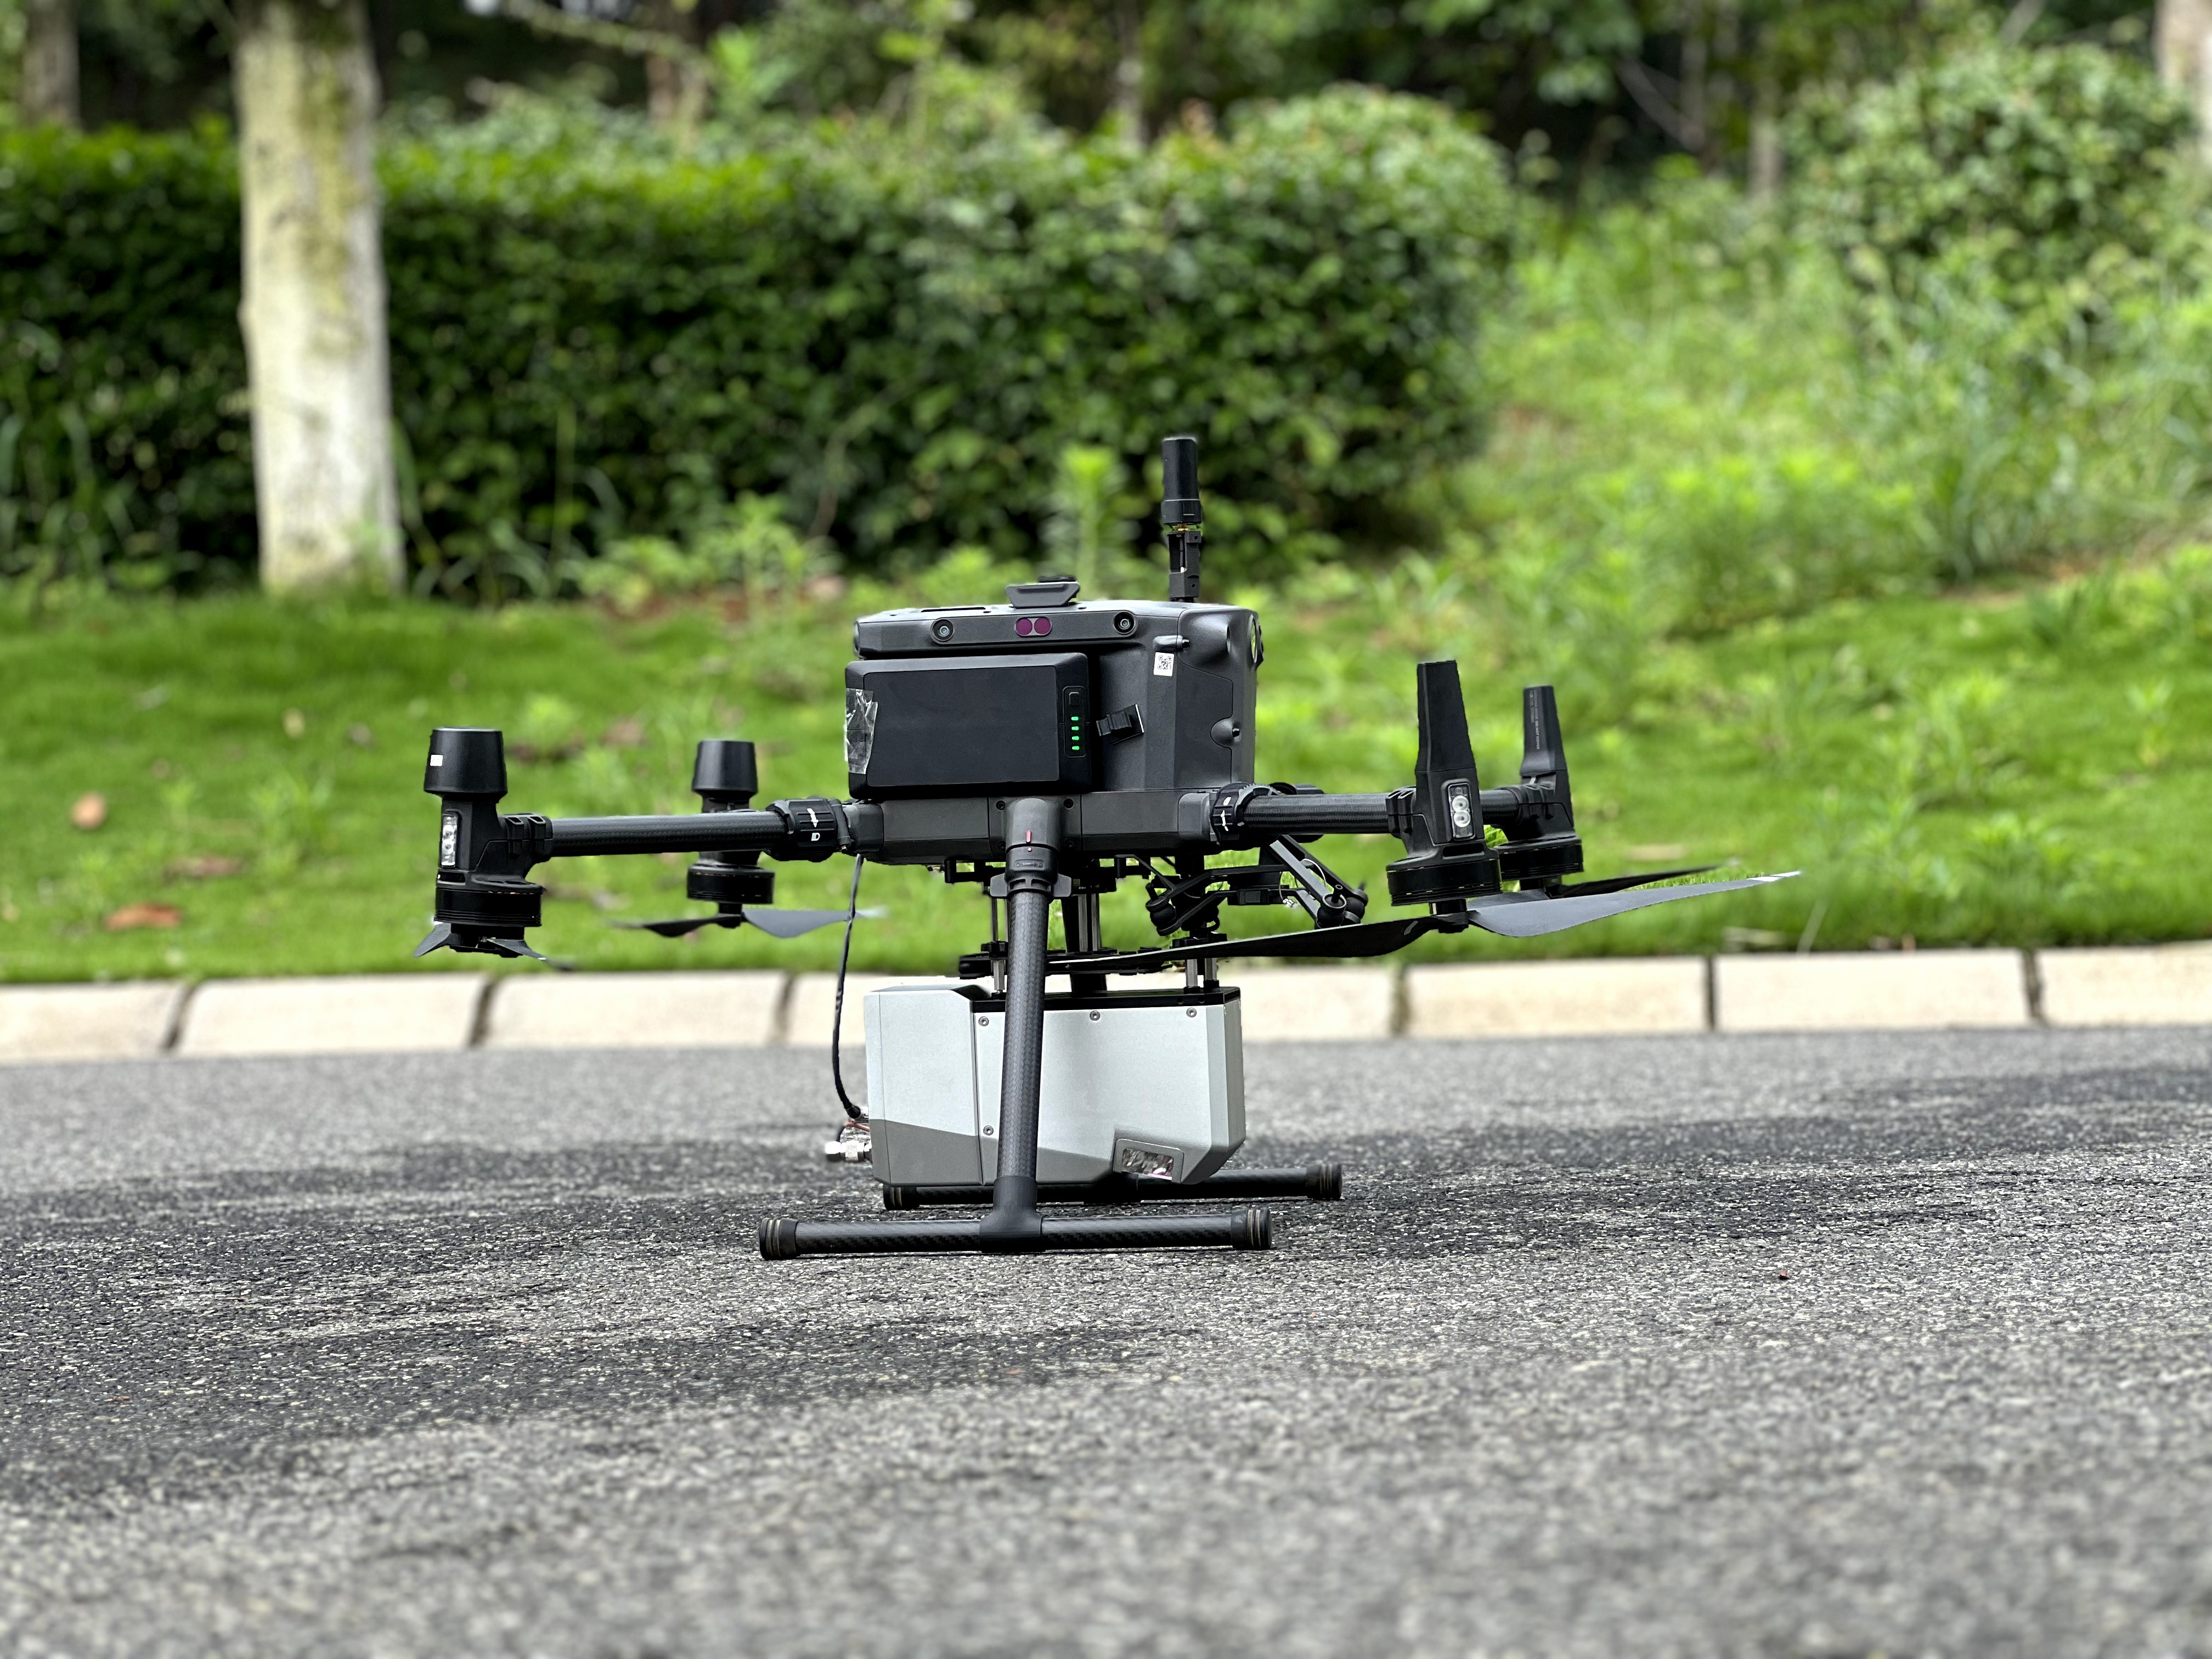 FDG1500 drone lidar system